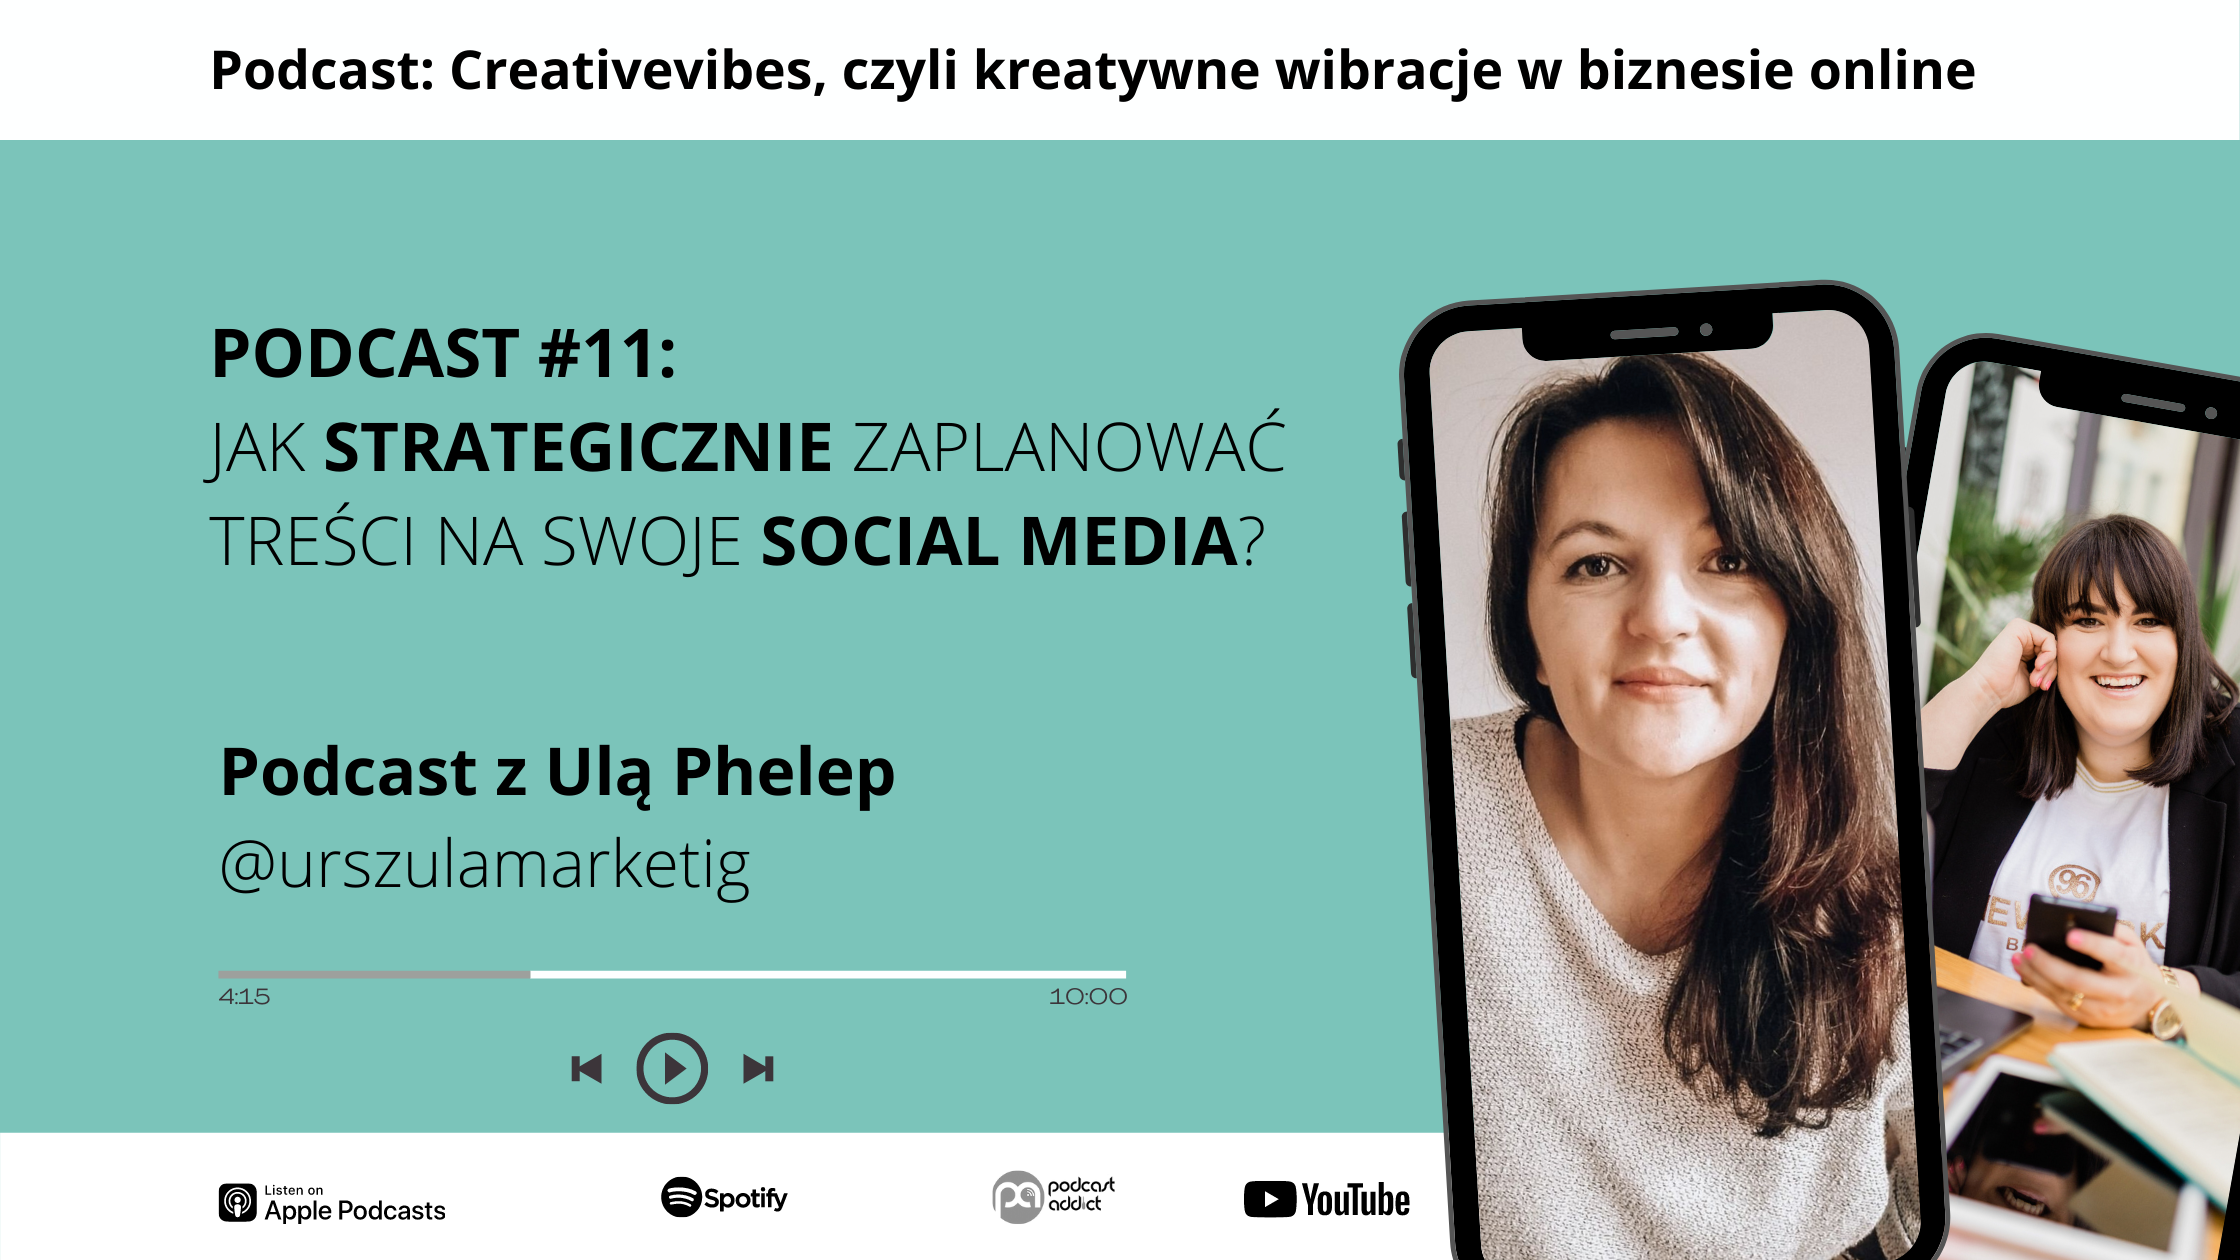 Podcast Creativevibes - Jak strategicznie zaplanować treści na swoje social media? Podcast z Ulą Phelep